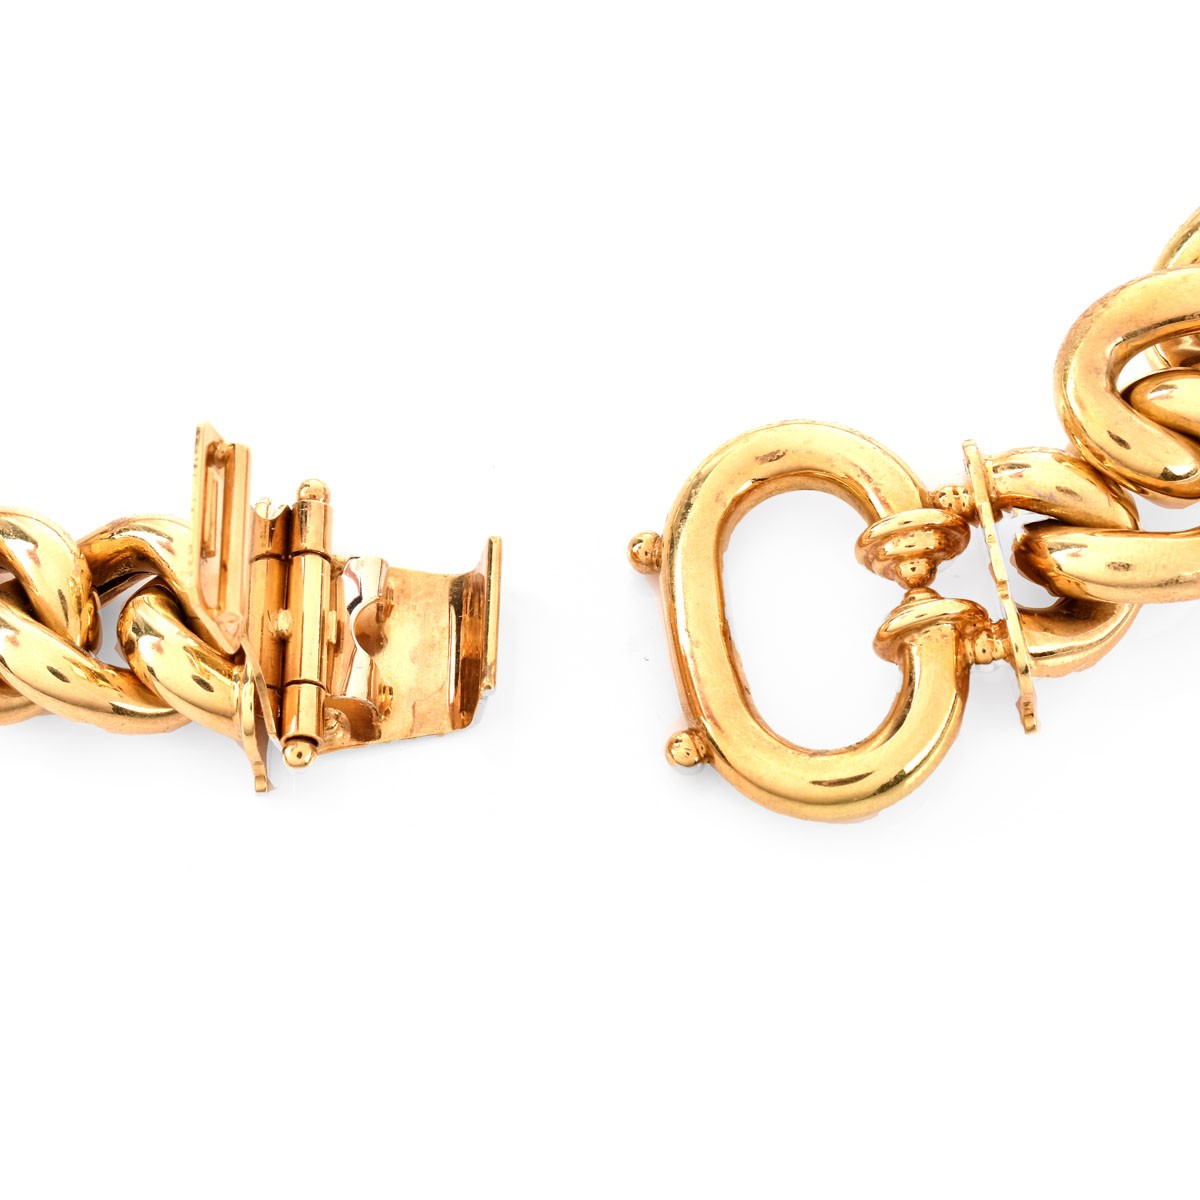 Vintage Italian 18K Gold Link Necklace